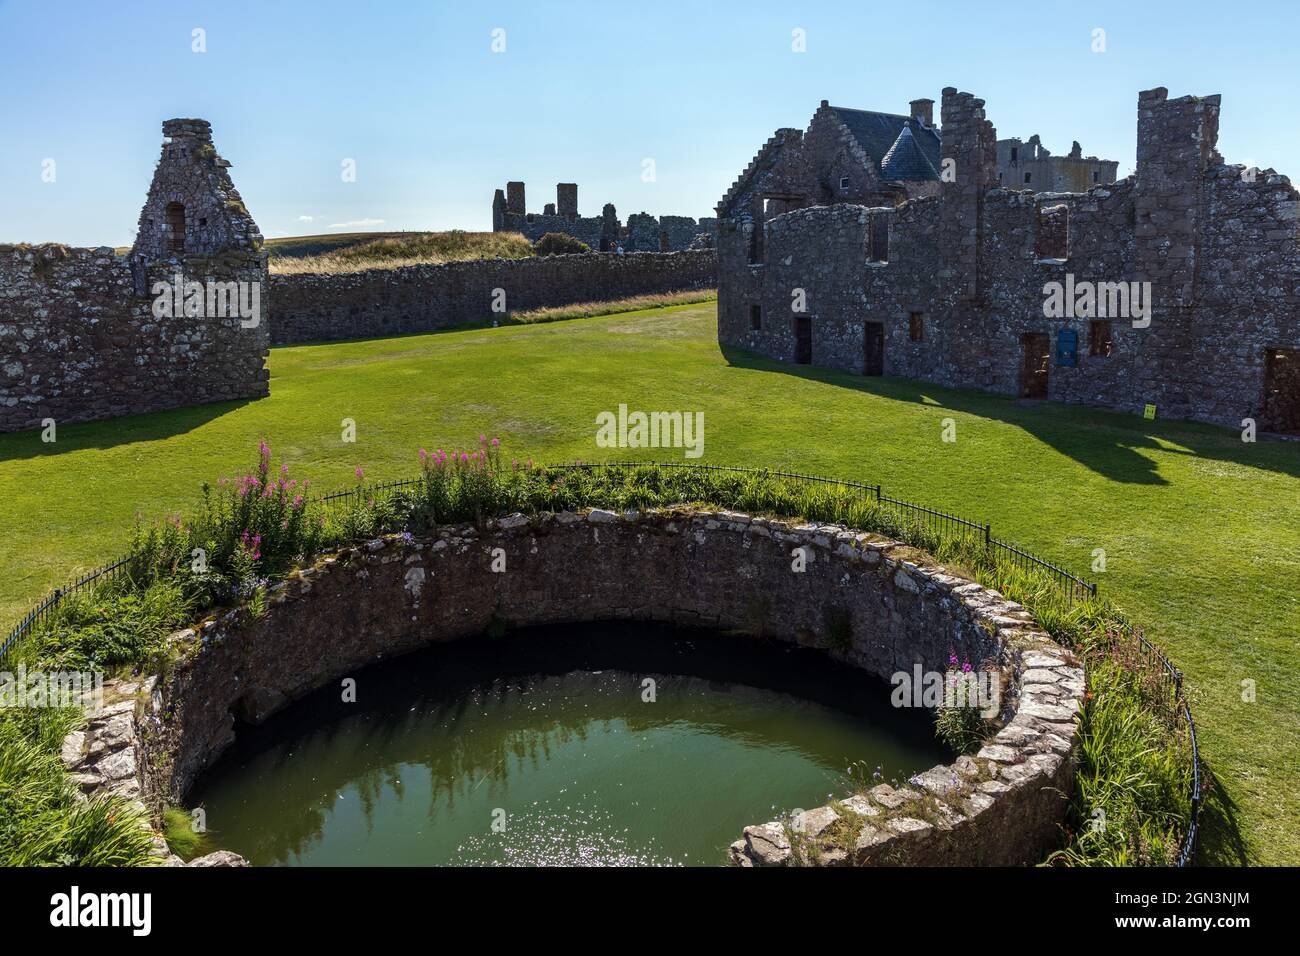 Resti della fortezza medievale, Dunnottar Castello, situato su un promontorio roccioso sulla costa nord-orientale della Scozia vicino Stonehaven, Aberdeenshire. Foto Stock